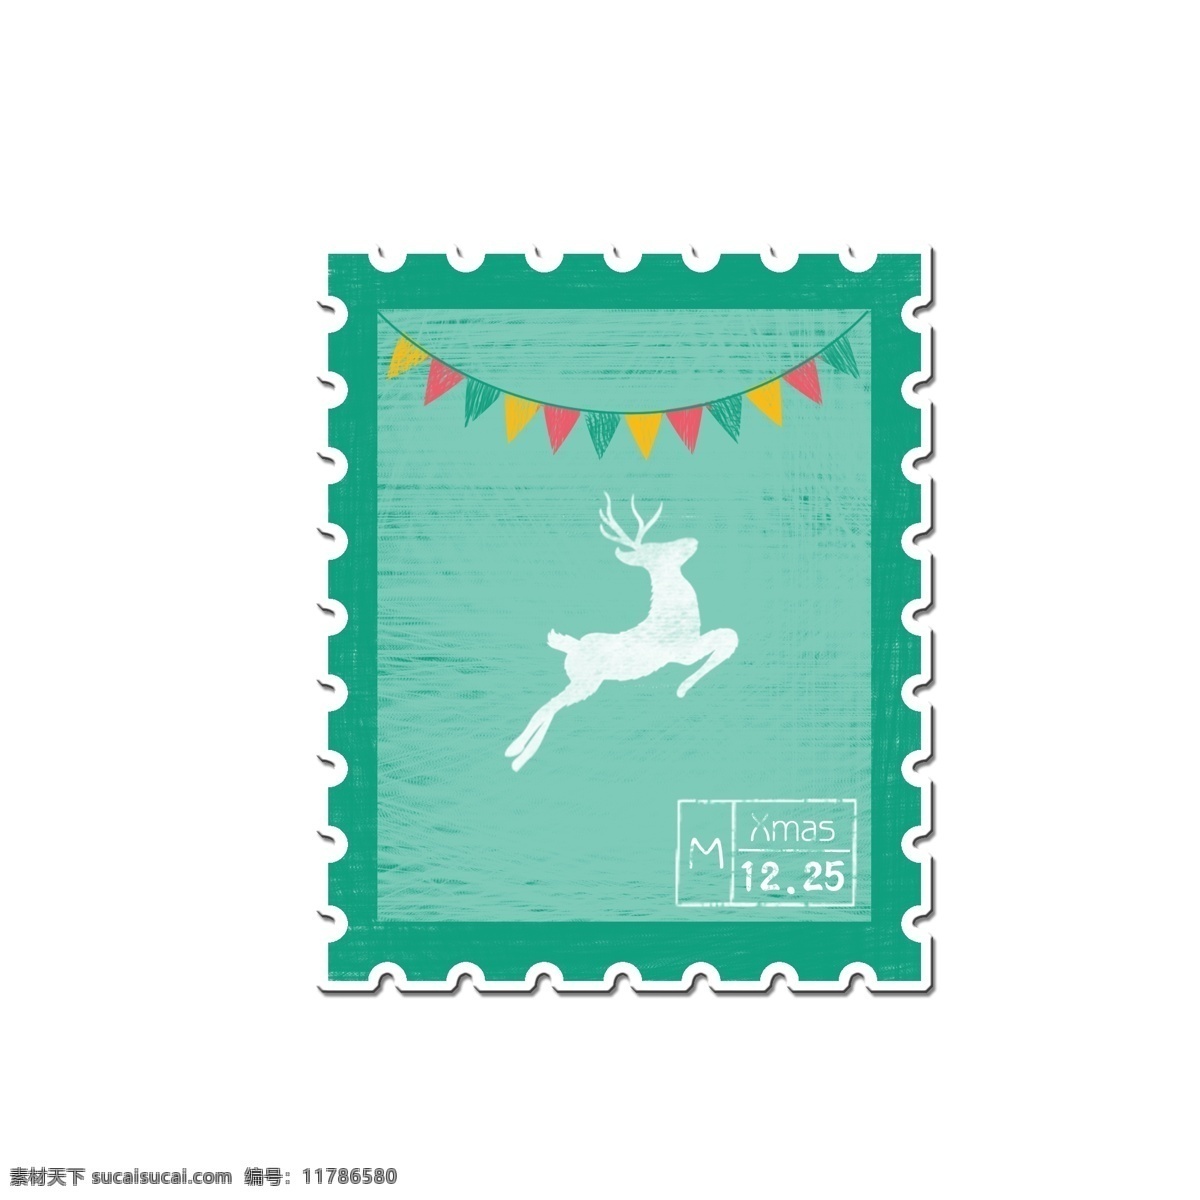 圣诞节 手绘 水彩 风 邮票 贴纸 手绘邮票 水彩风 小鹿 小彩旗 邮票贴纸